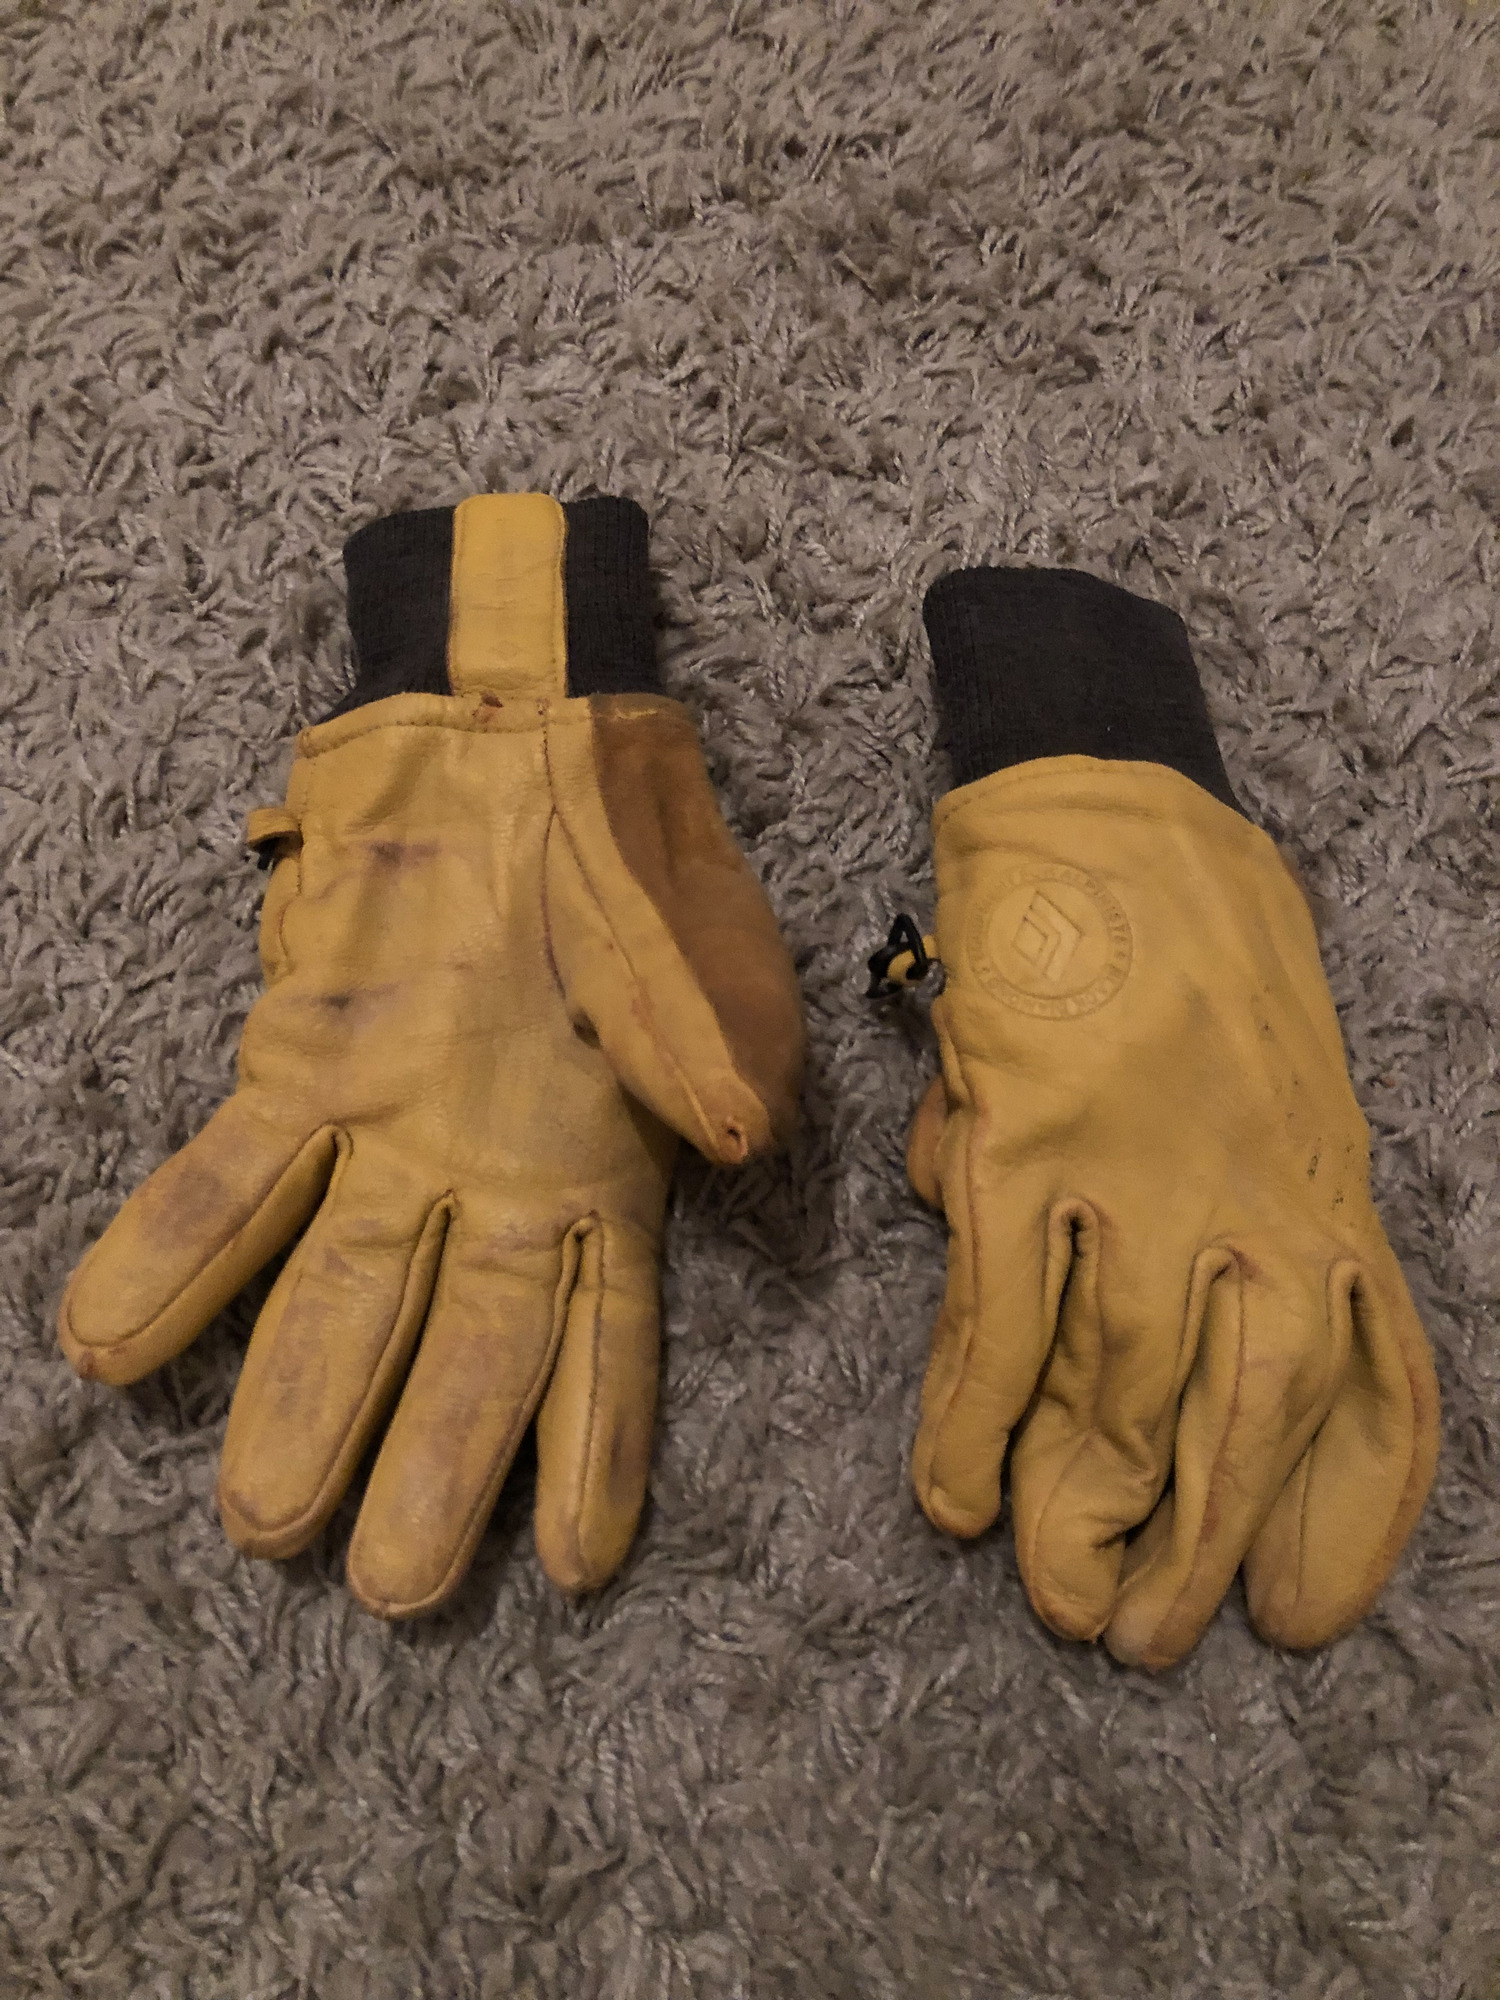 Black Diamond Dirt Bag gloves